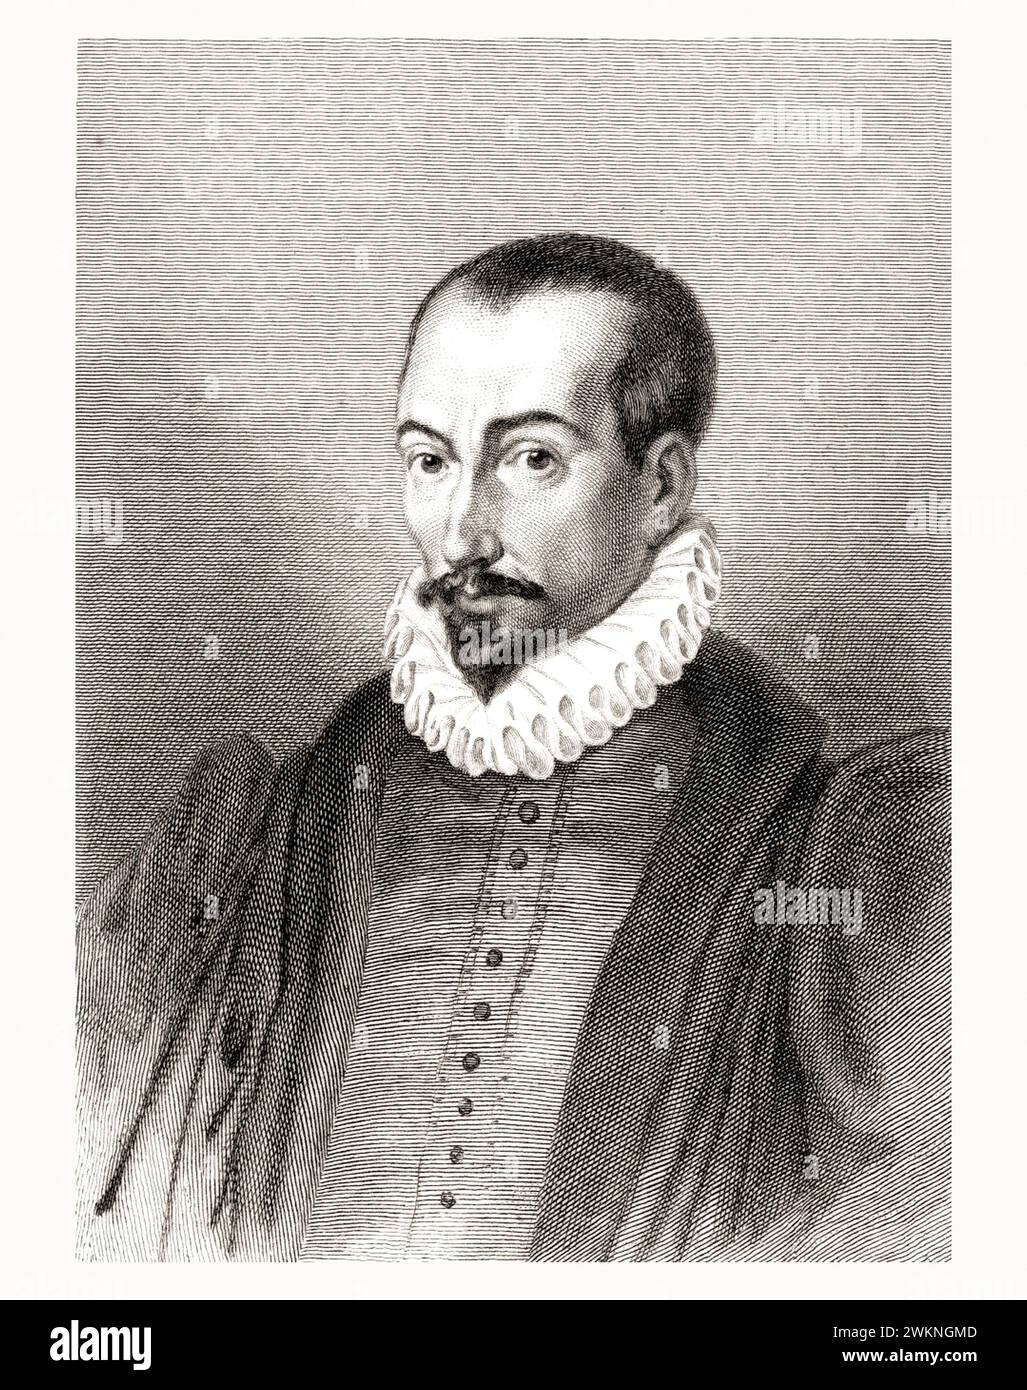 1585 c. , FRANKREICH : der italienische Jurist , Historiker und Schriftsteller PIERRE PITHOU ( 1539–1596 ). Porträt von Gavard , veröffentlicht 1839 . - GESCHICHTE - FOTO STORICHE - HISTORIAN - STORICO - SCRITTORE - WRITER - LETTERATURA - LITERATUR - giureconsulto - GIURISTA - LEGGE - LAY - nobili - nobiltà francese - französischer Adel - FRANCIA - INCISIONE - GRAVUR - ILLUSTRATION - ILLUSTRAZIONE - Kragen - Collare - Colletto - GORGIERA - pizzo - Spitze - Bart - barba -- Archivio GBB Stockfoto